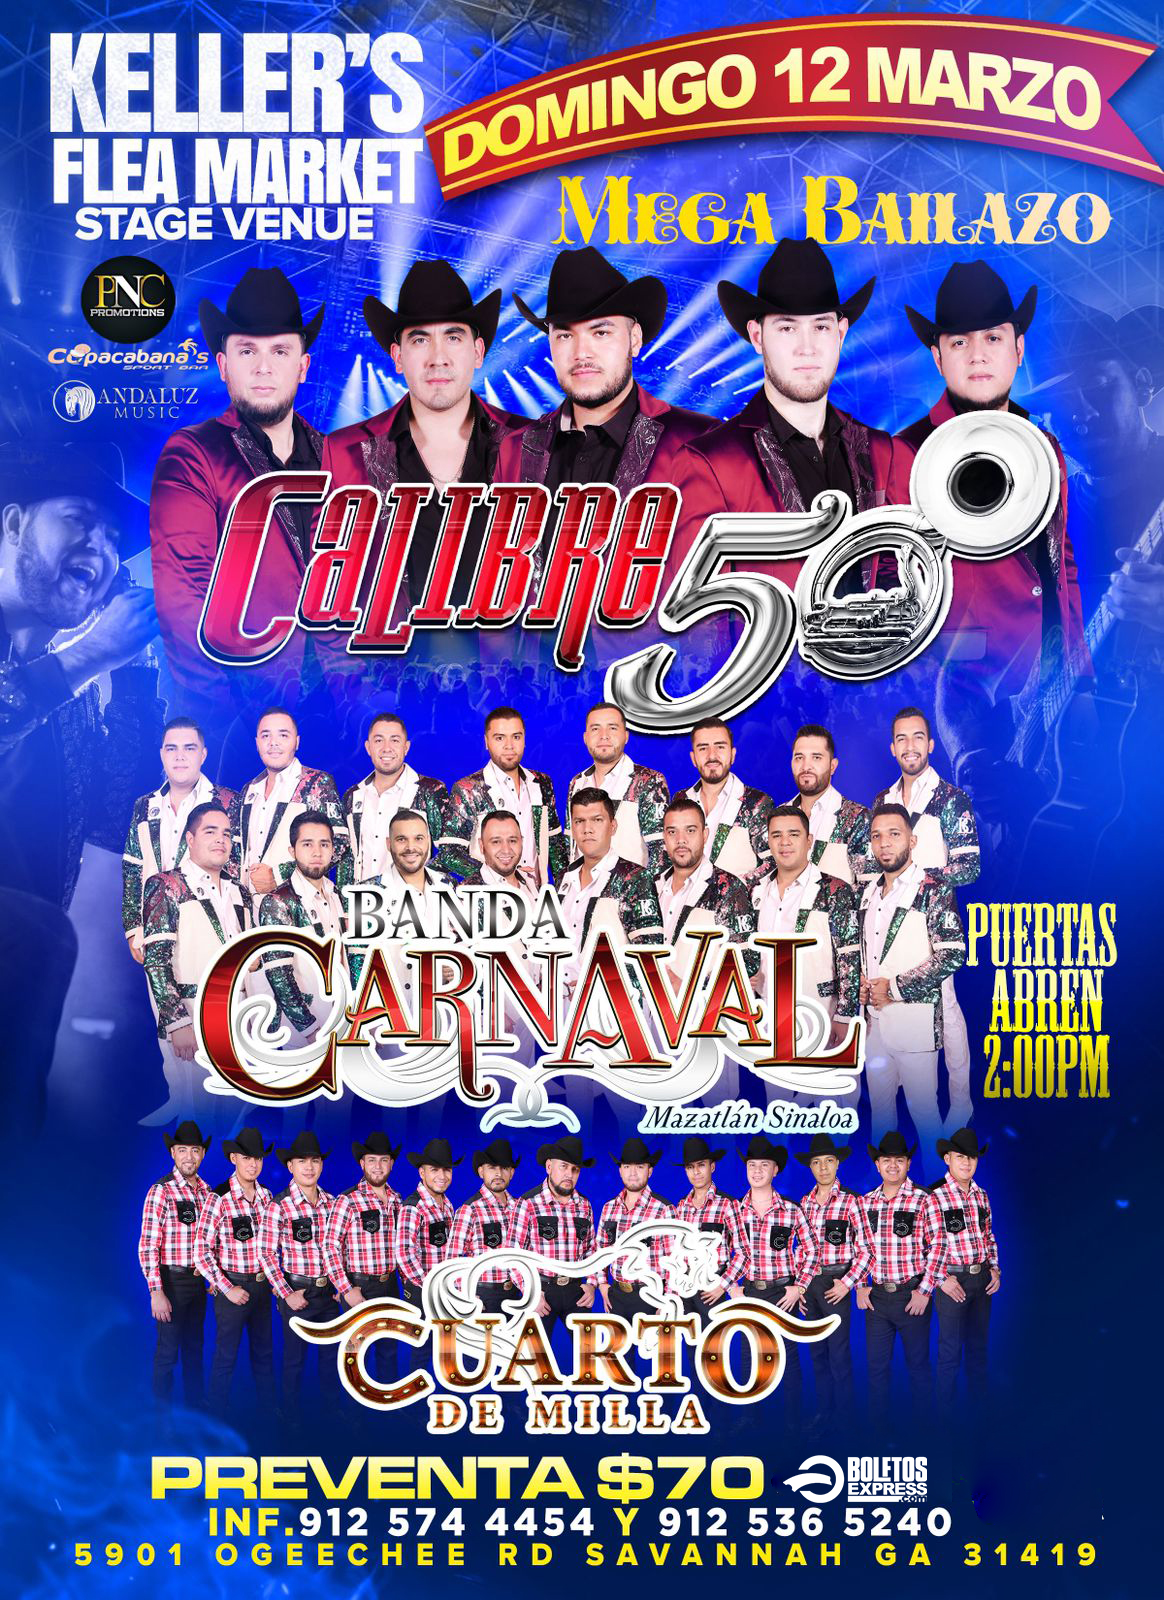 Calibre 50 and Banda Carnaval — Visit Vallejo